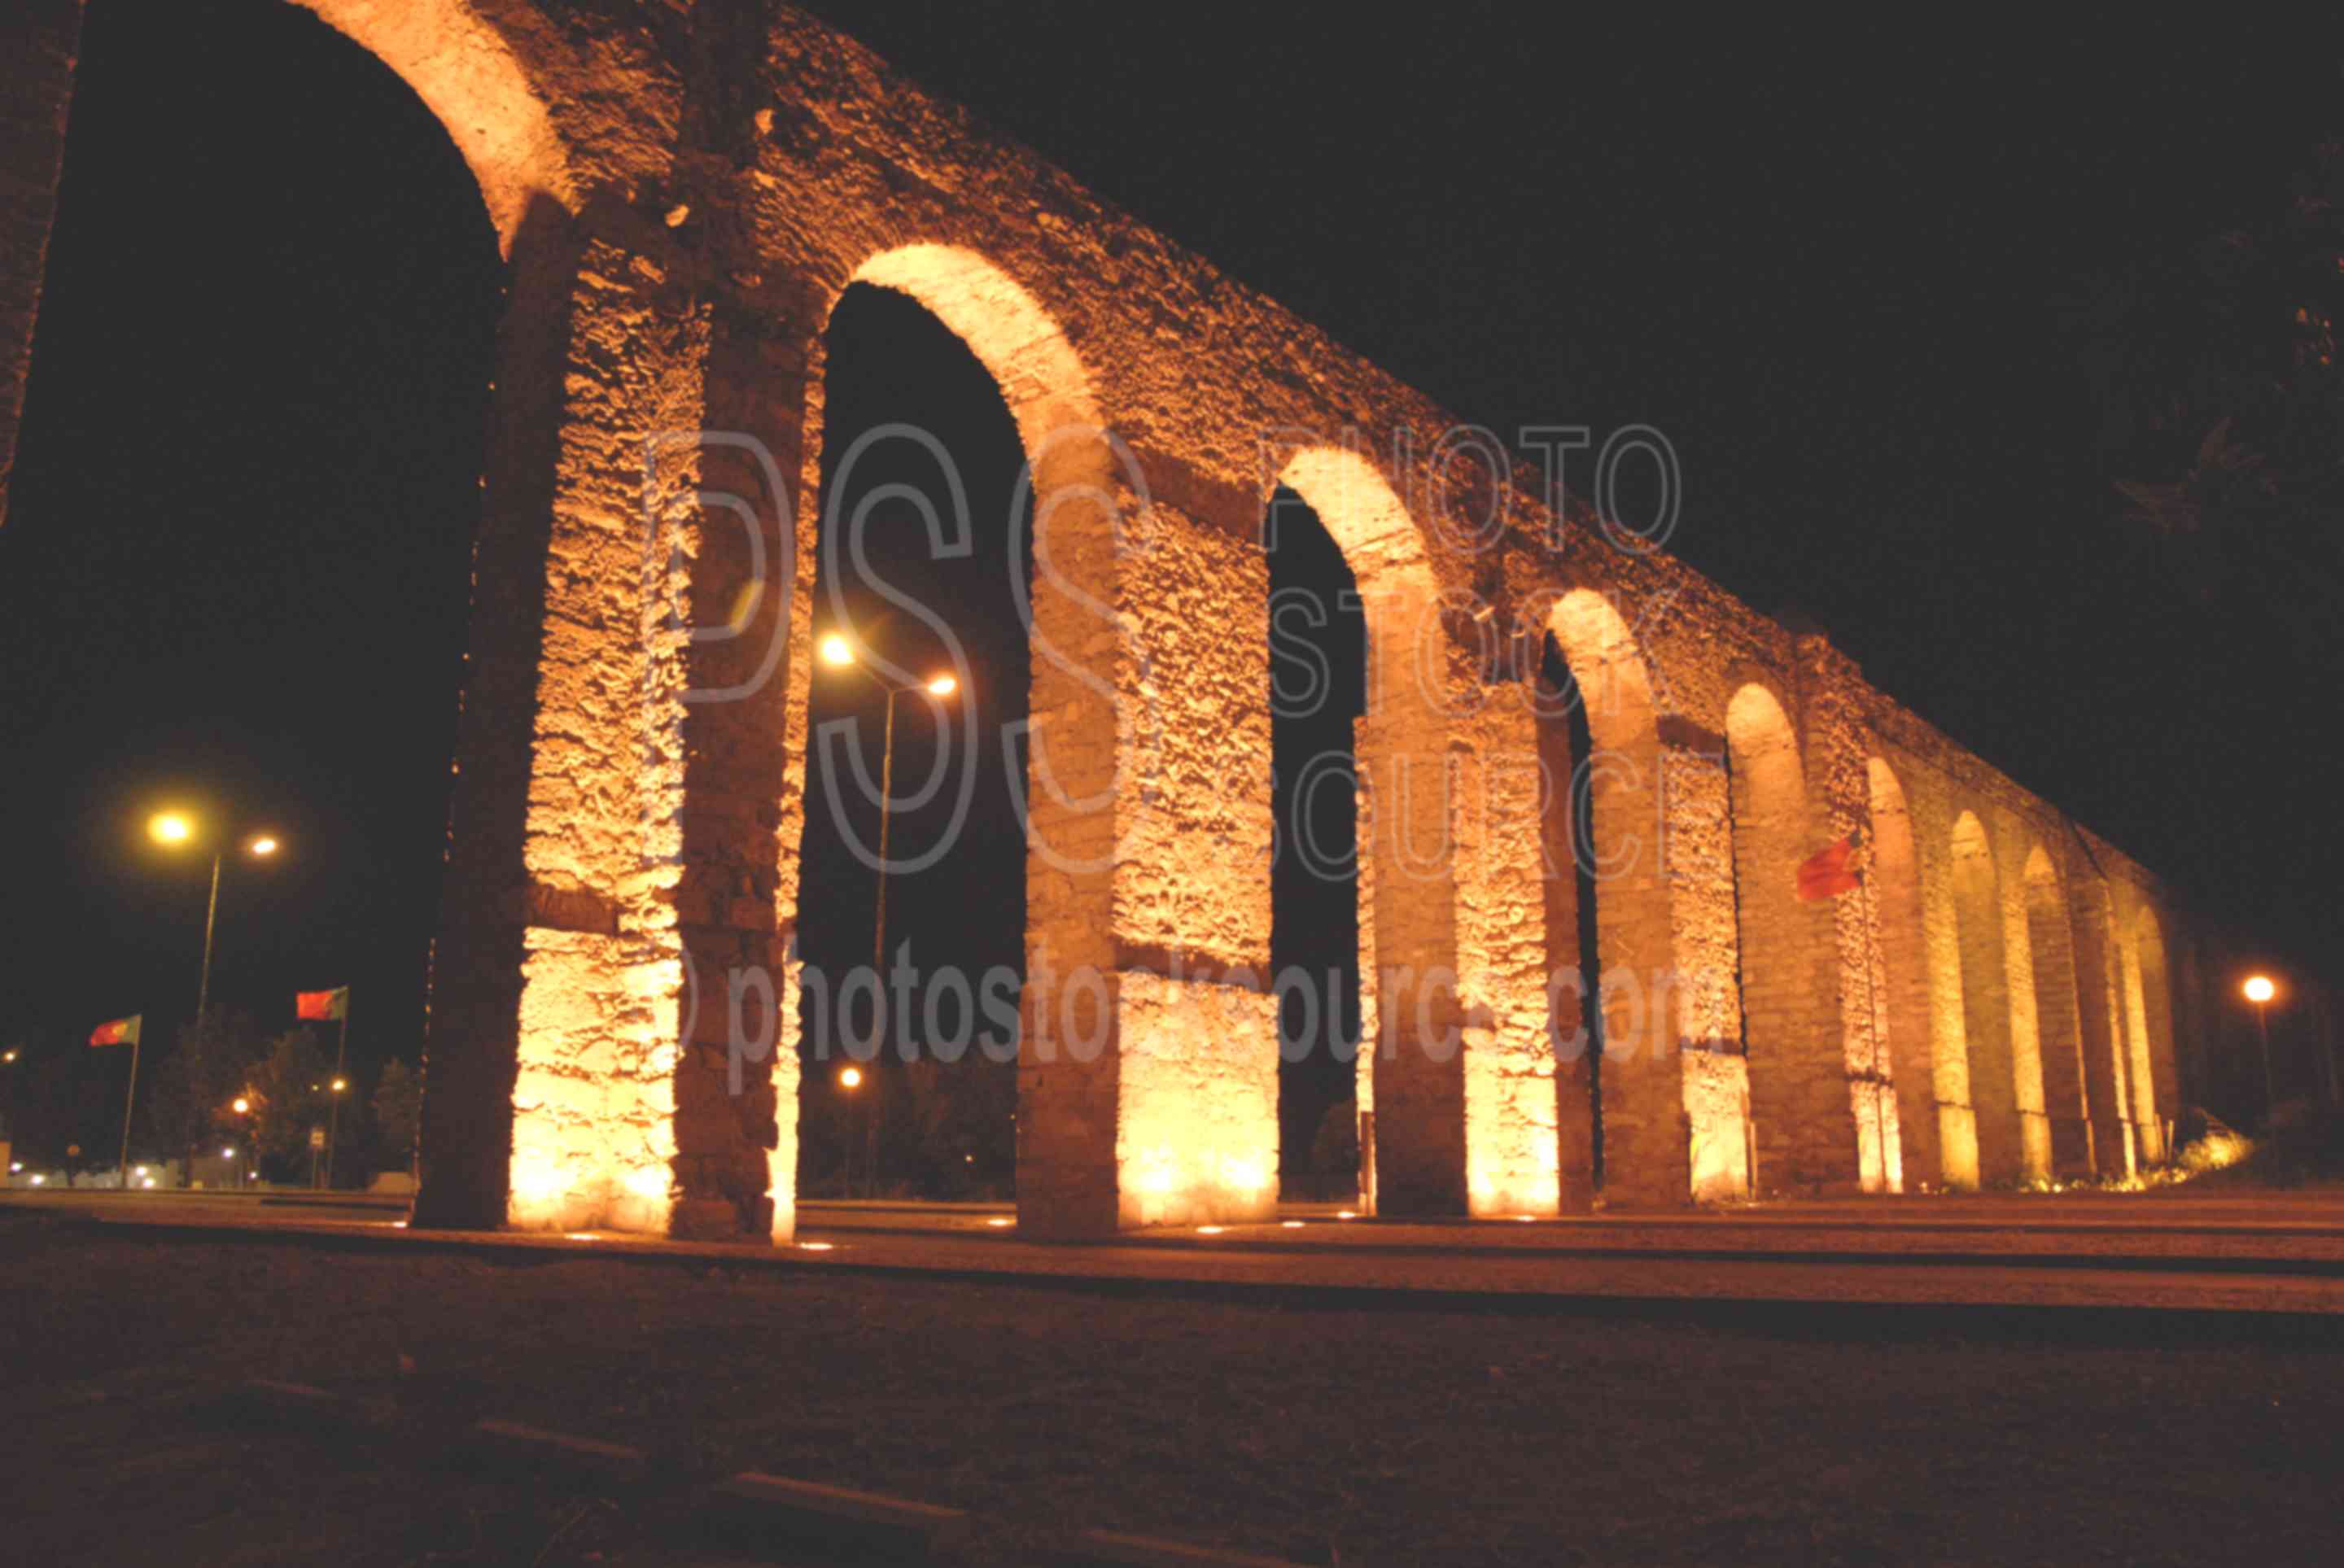 Aqueducto de Agua de Prata,arch,roman,architecture,aquaduct,night,aqueduct,aqueduct of silver waters